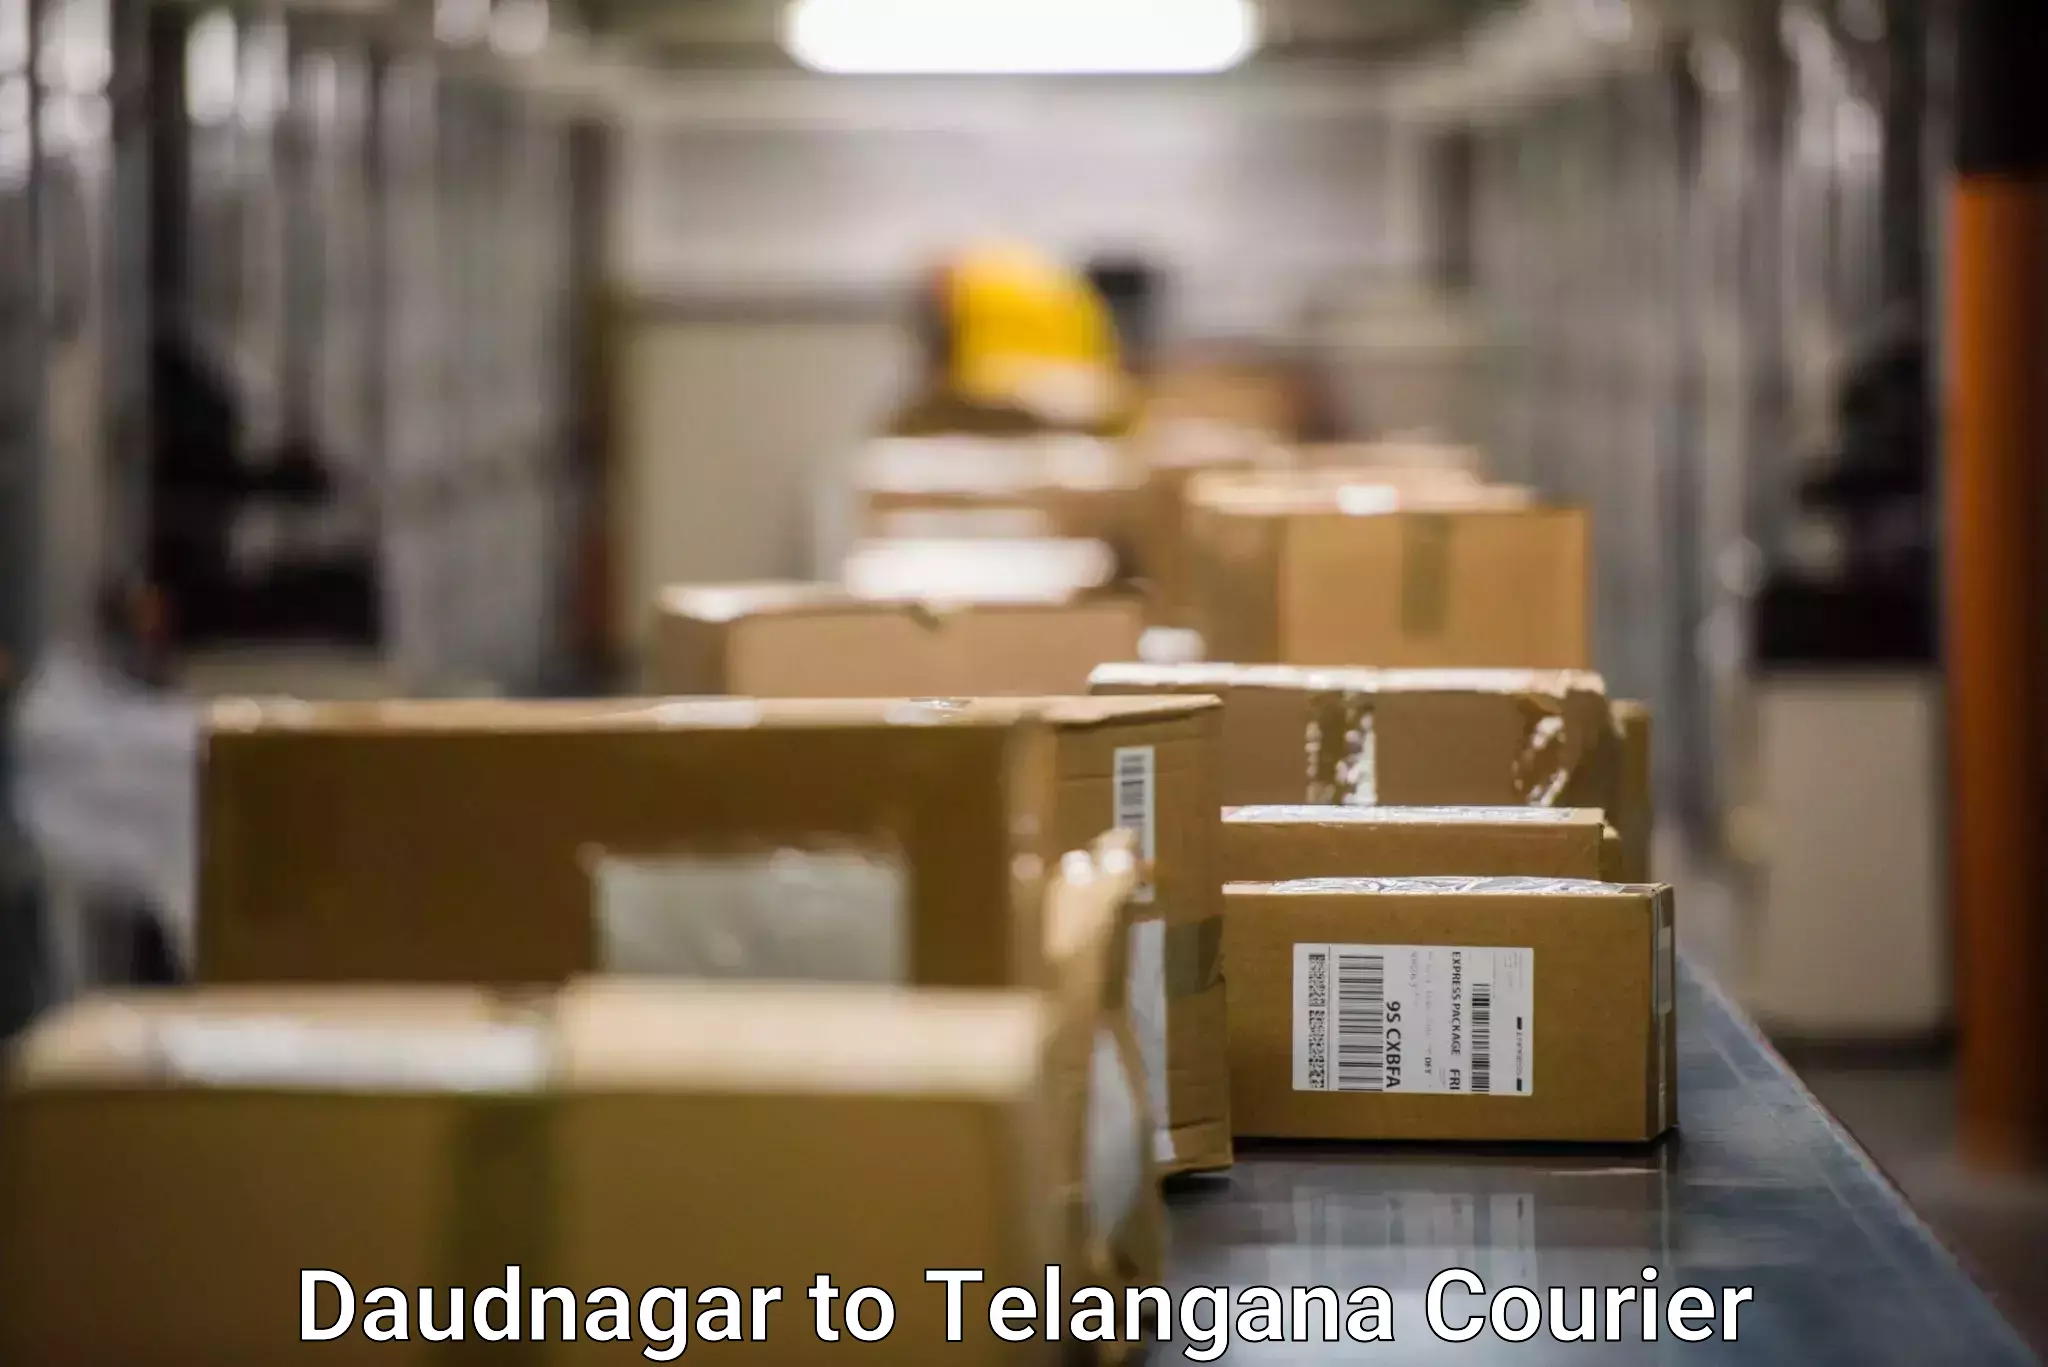 Premium delivery services Daudnagar to Khammam